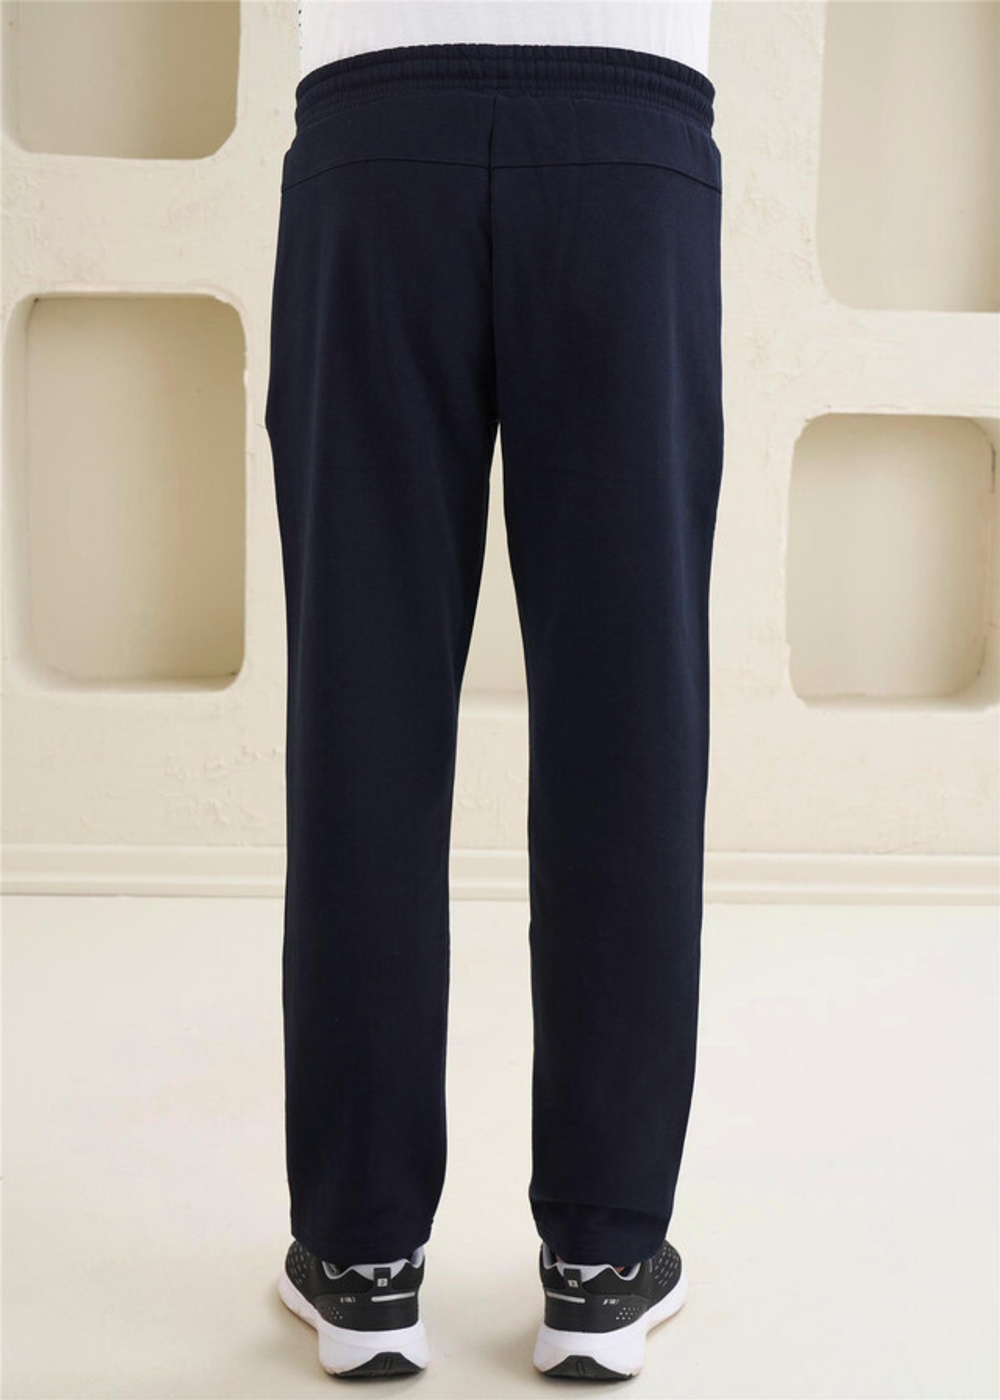 Мужские спортивные штаны из трикотажа для максимального комфорта - 40125